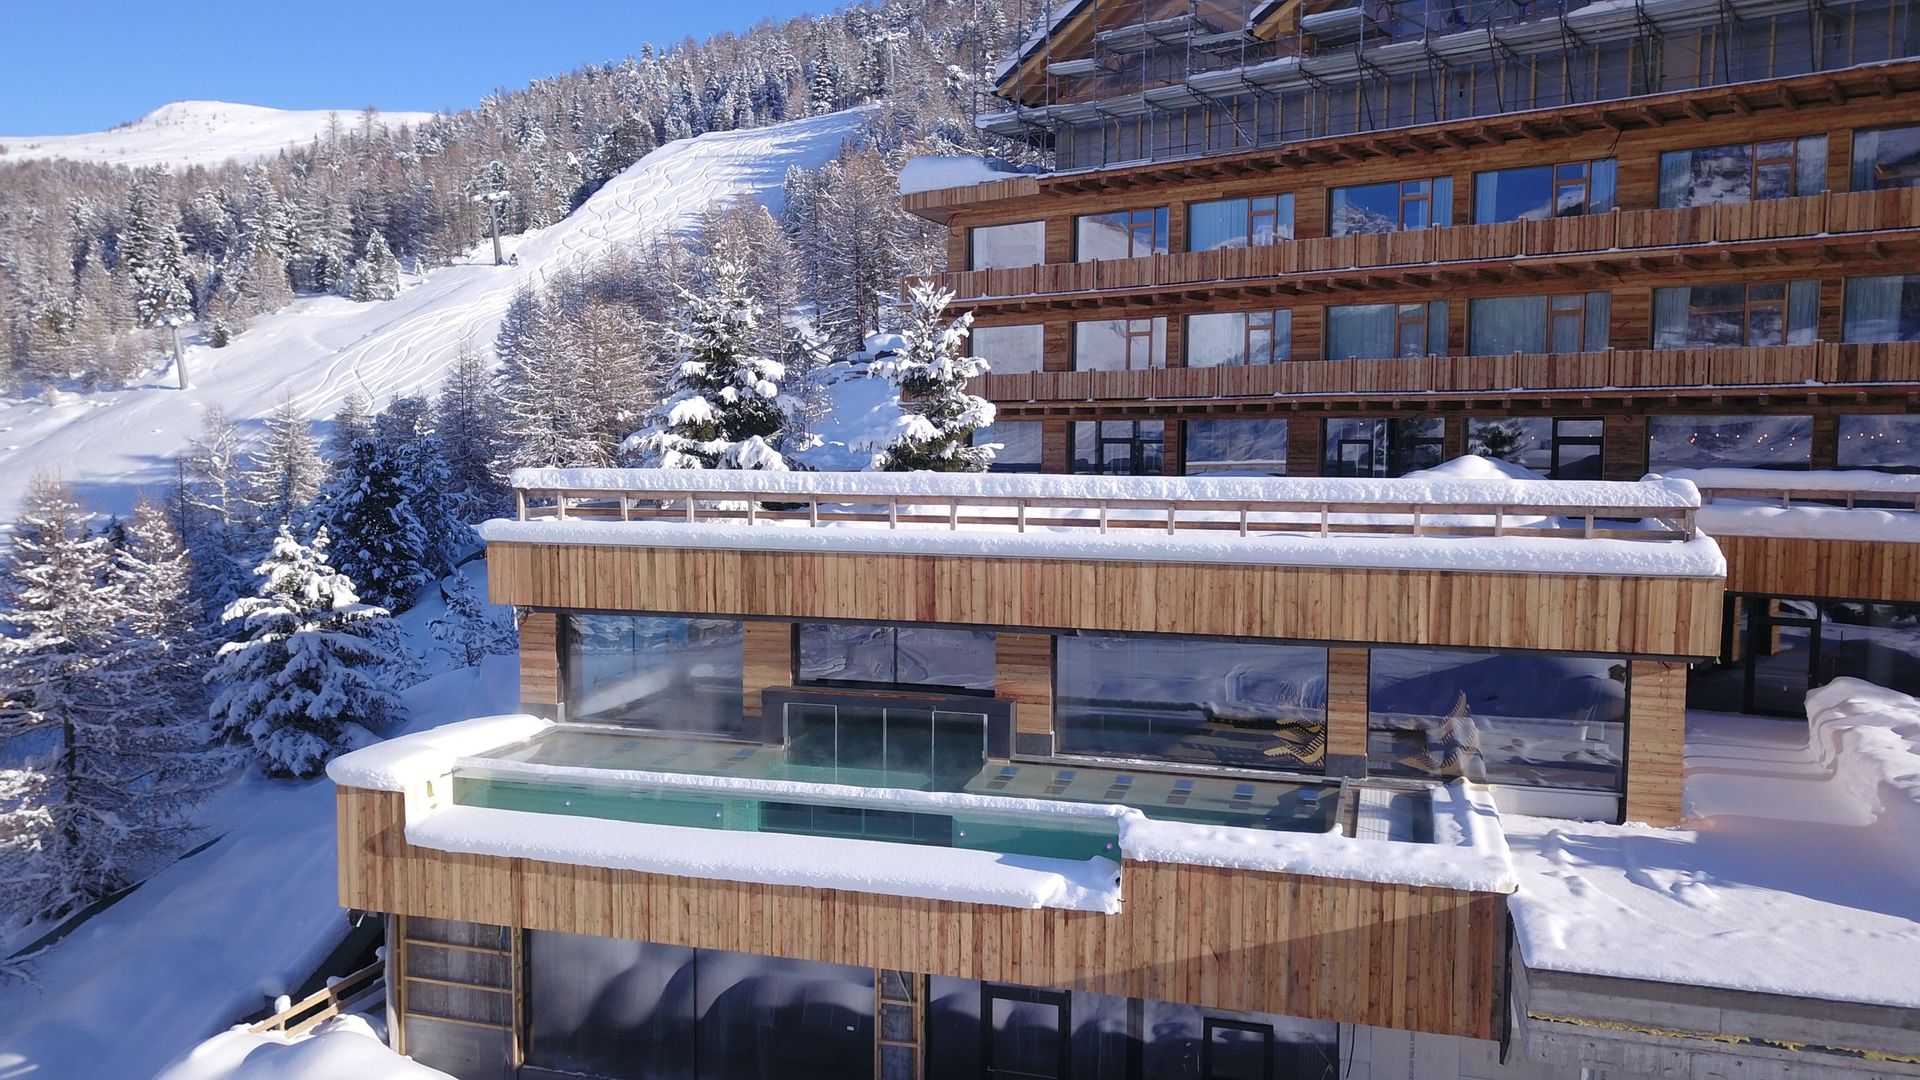 Meer info over Alpen Village  bij Wintertrex